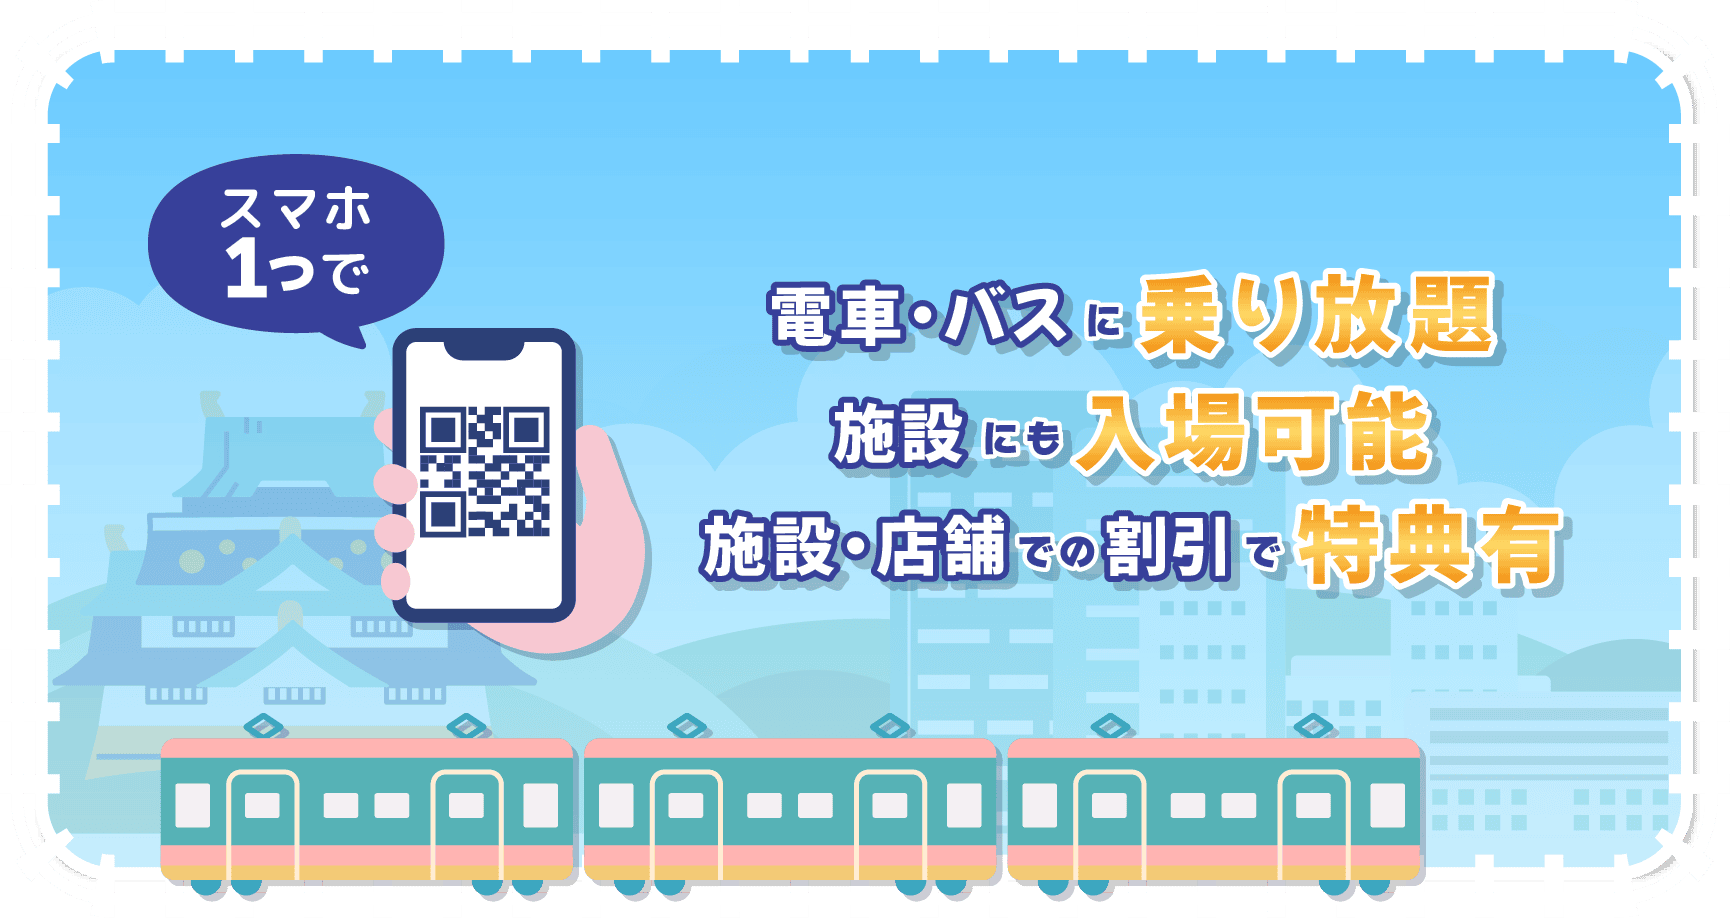 大阪周遊パス 電車・バスに乗り放題、施設にも入場可能、施設・店舗での割引で特典有り